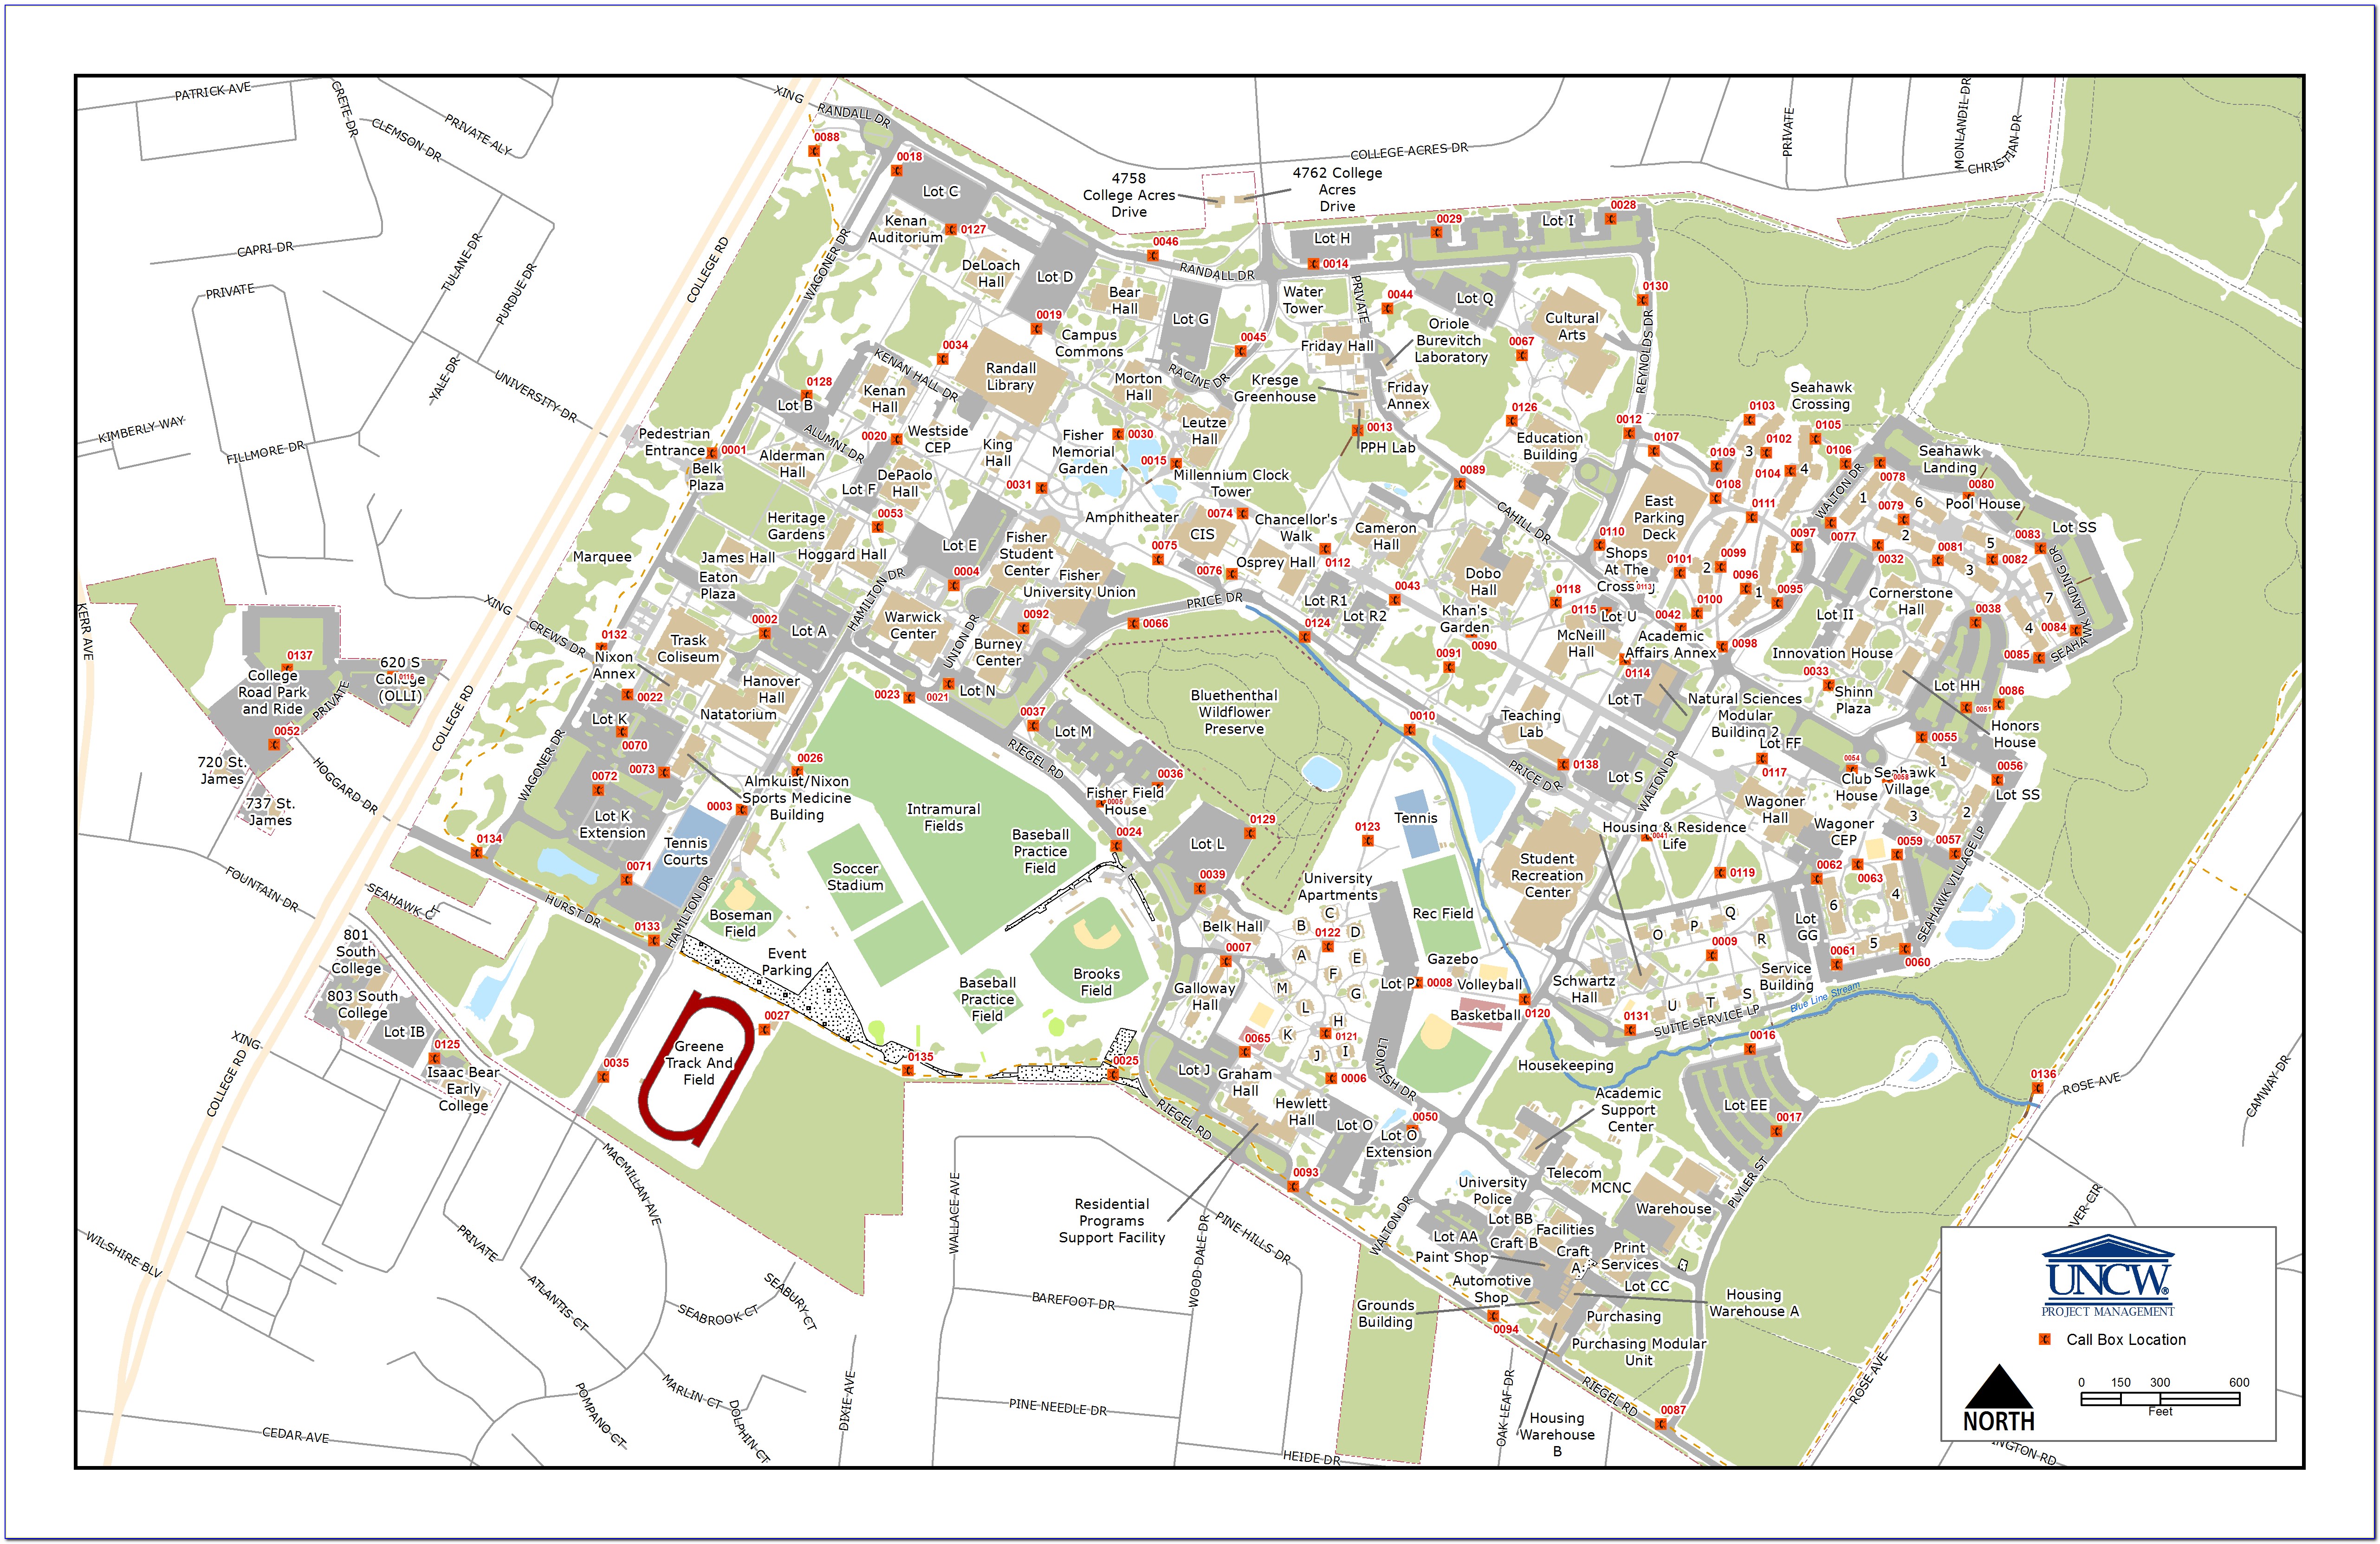 Uncw Campus Building Map